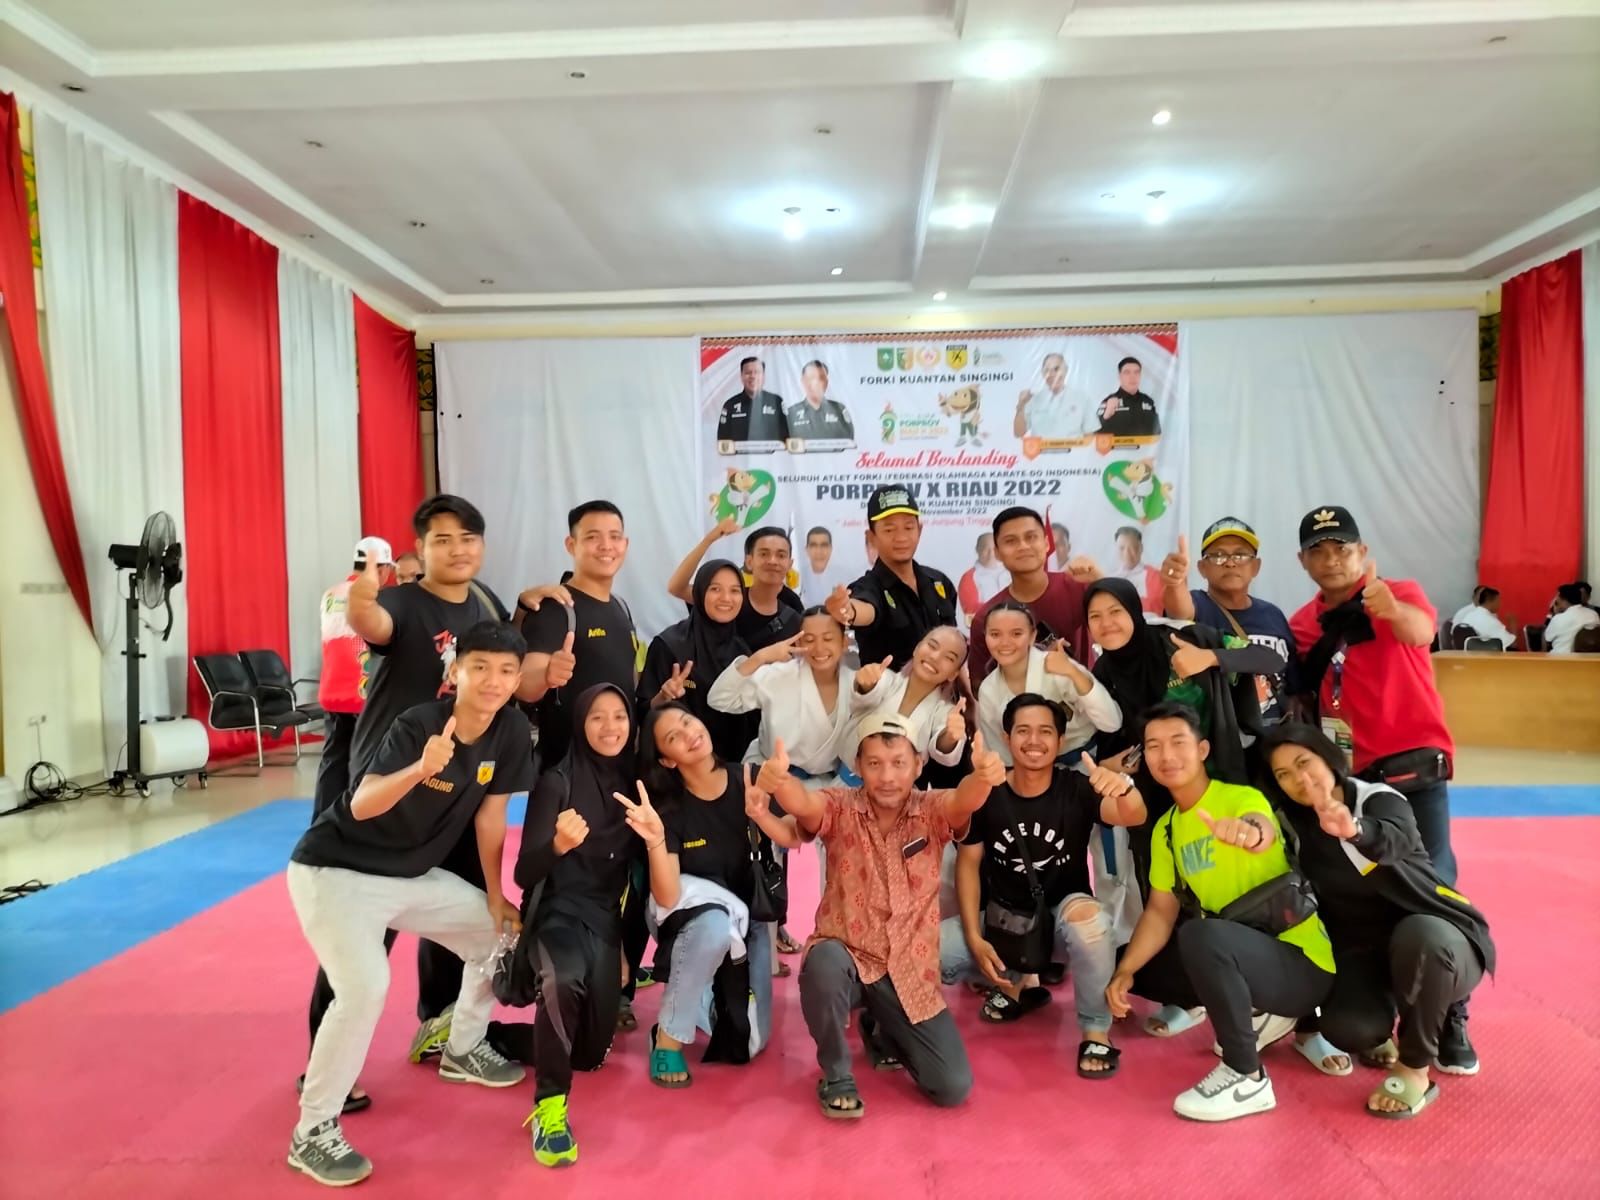 Karateka Group Putri Inhil Persembahkan Medali Emas di Porprov Riau ke X Tahun 2022